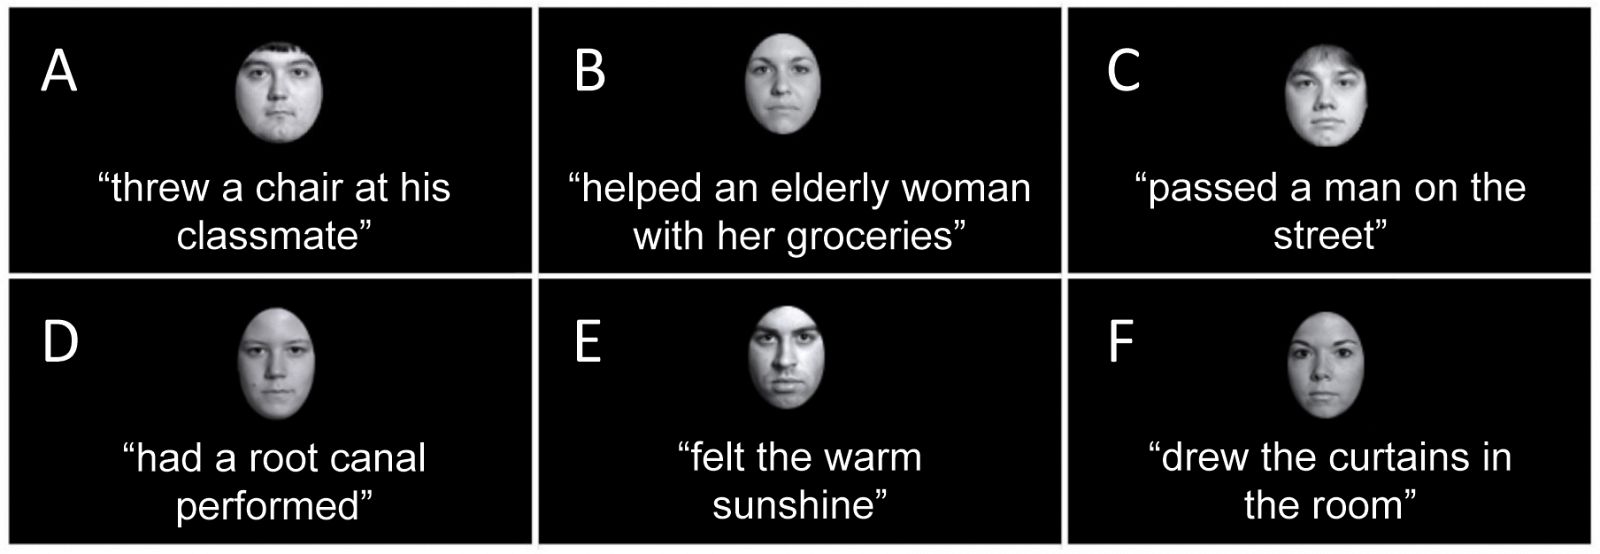 En el experimento se asociaban rostros a comportamientos positivos, negativos o neutros, y luego se estudiaba qué imagen prevalecía más.